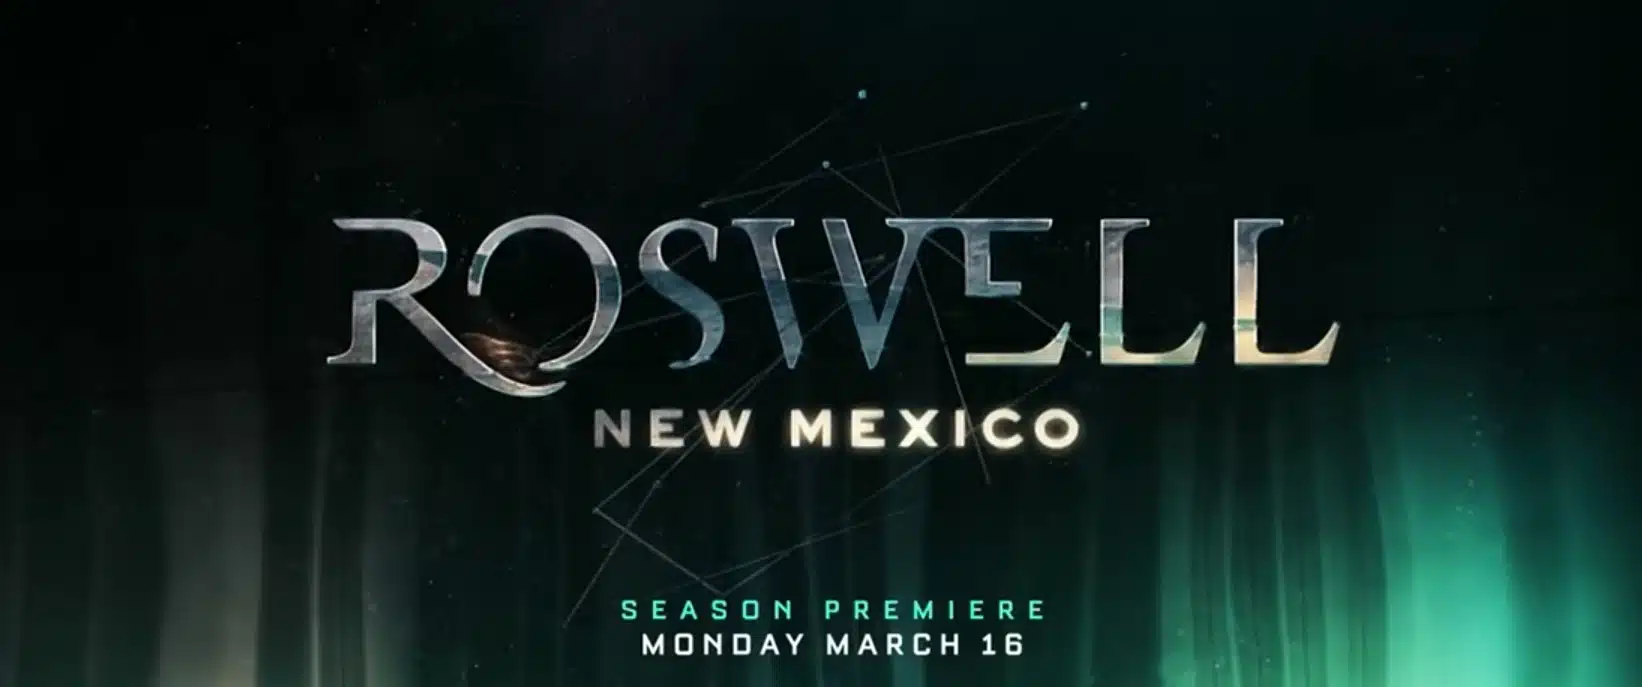 Roswell New Mexico 2 trama, cast, anticipazioni serie tv. Quando esce